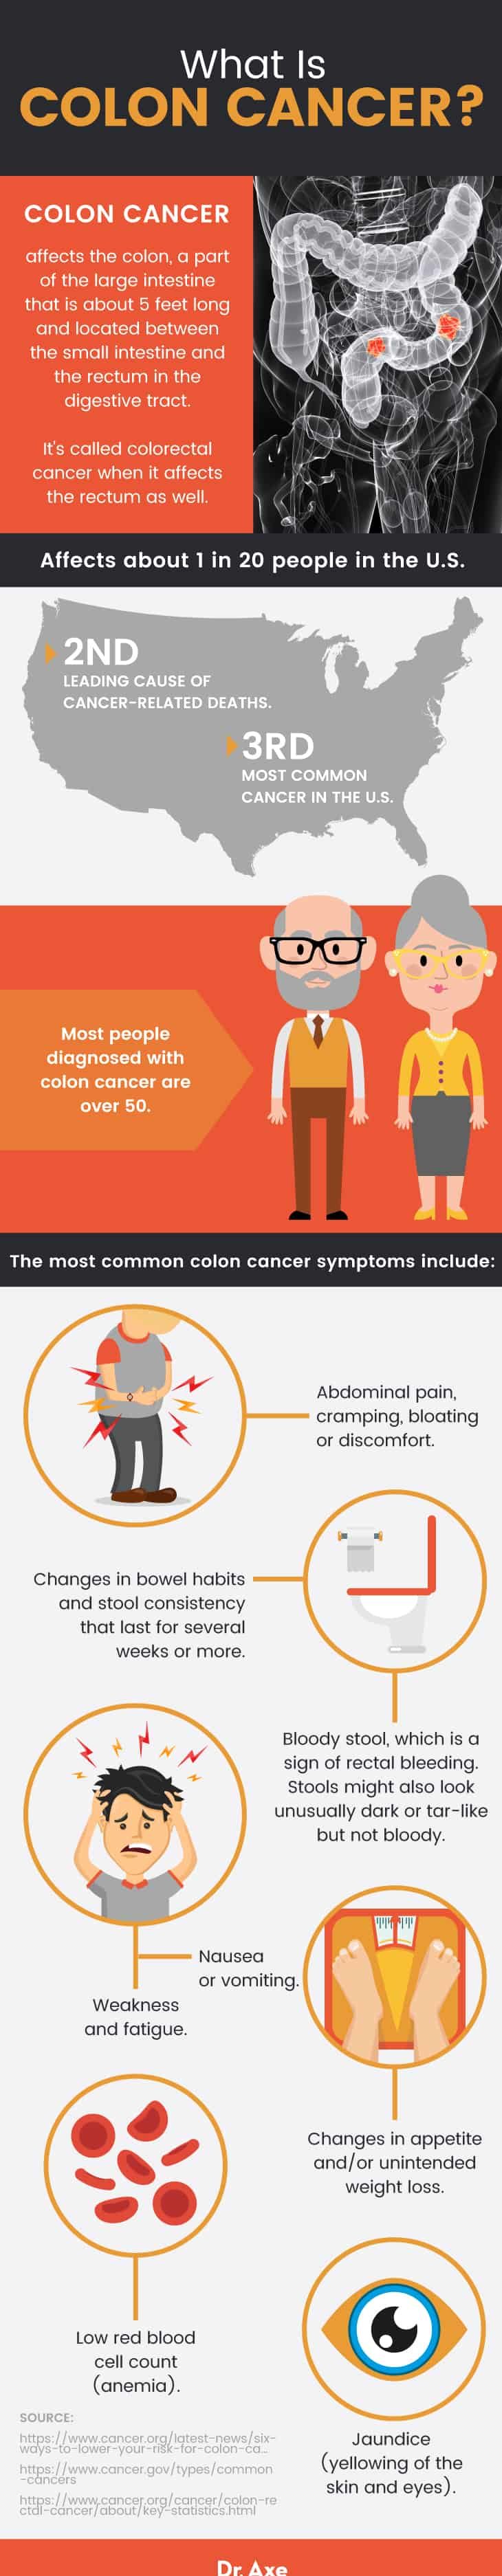 Colon cancer symptoms: what is colon cancer?